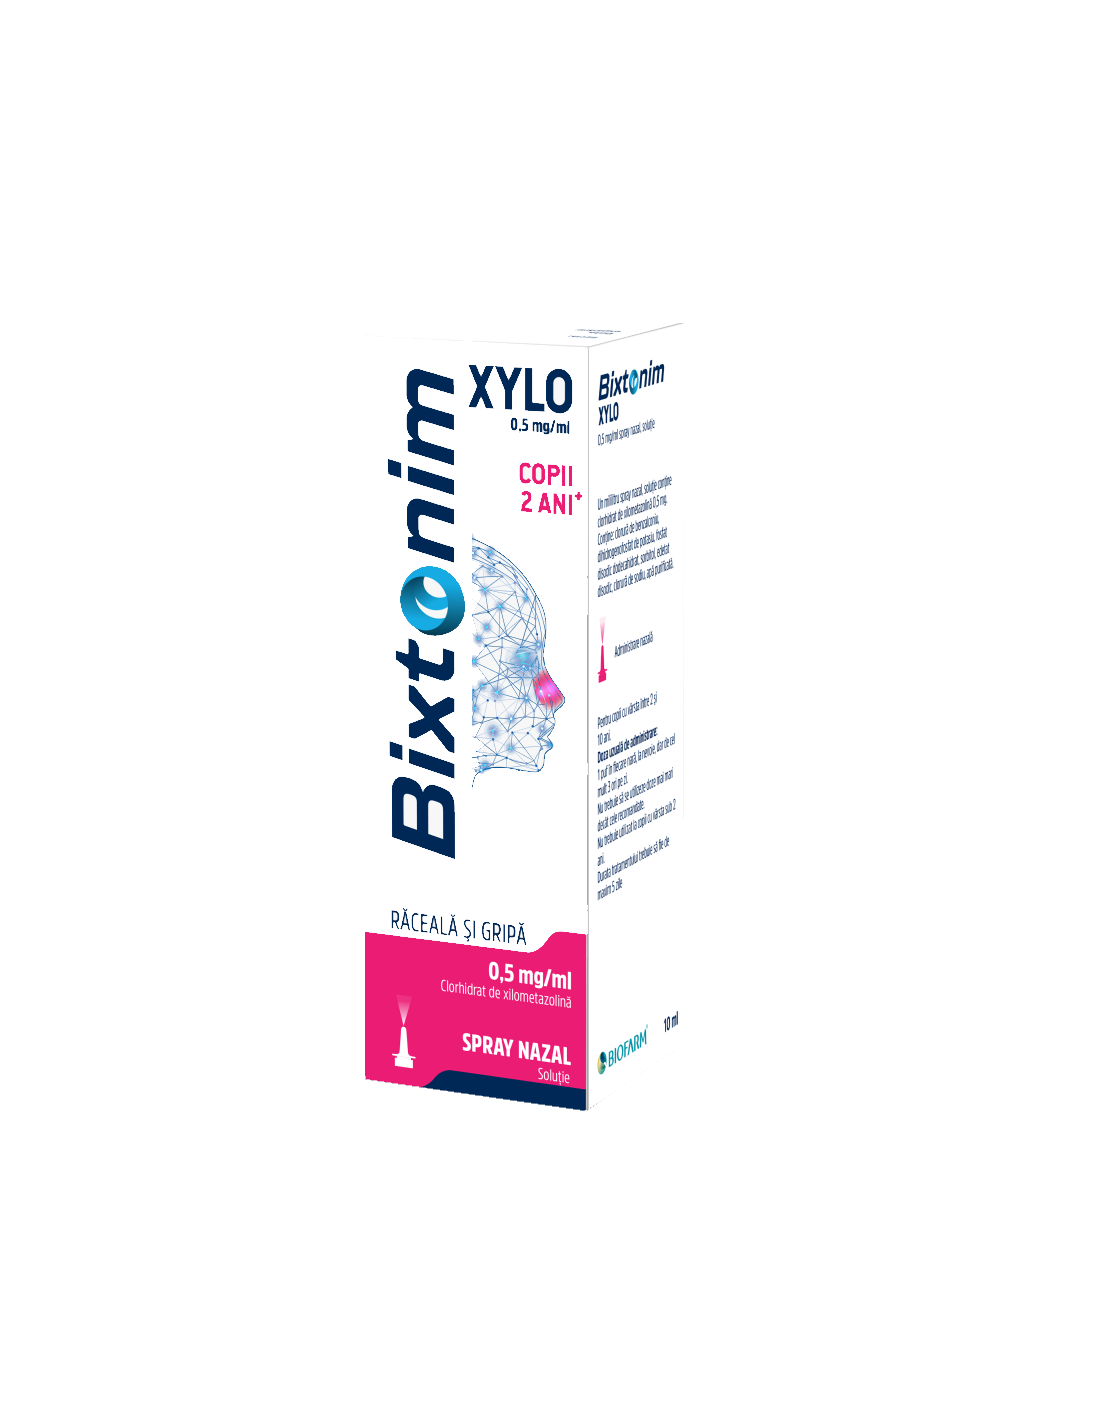 Bixtonim Xylo 0.5mg/ml spray nazal, 10ml, Biofarm - NAS-INFUNDAT - BIOFARM